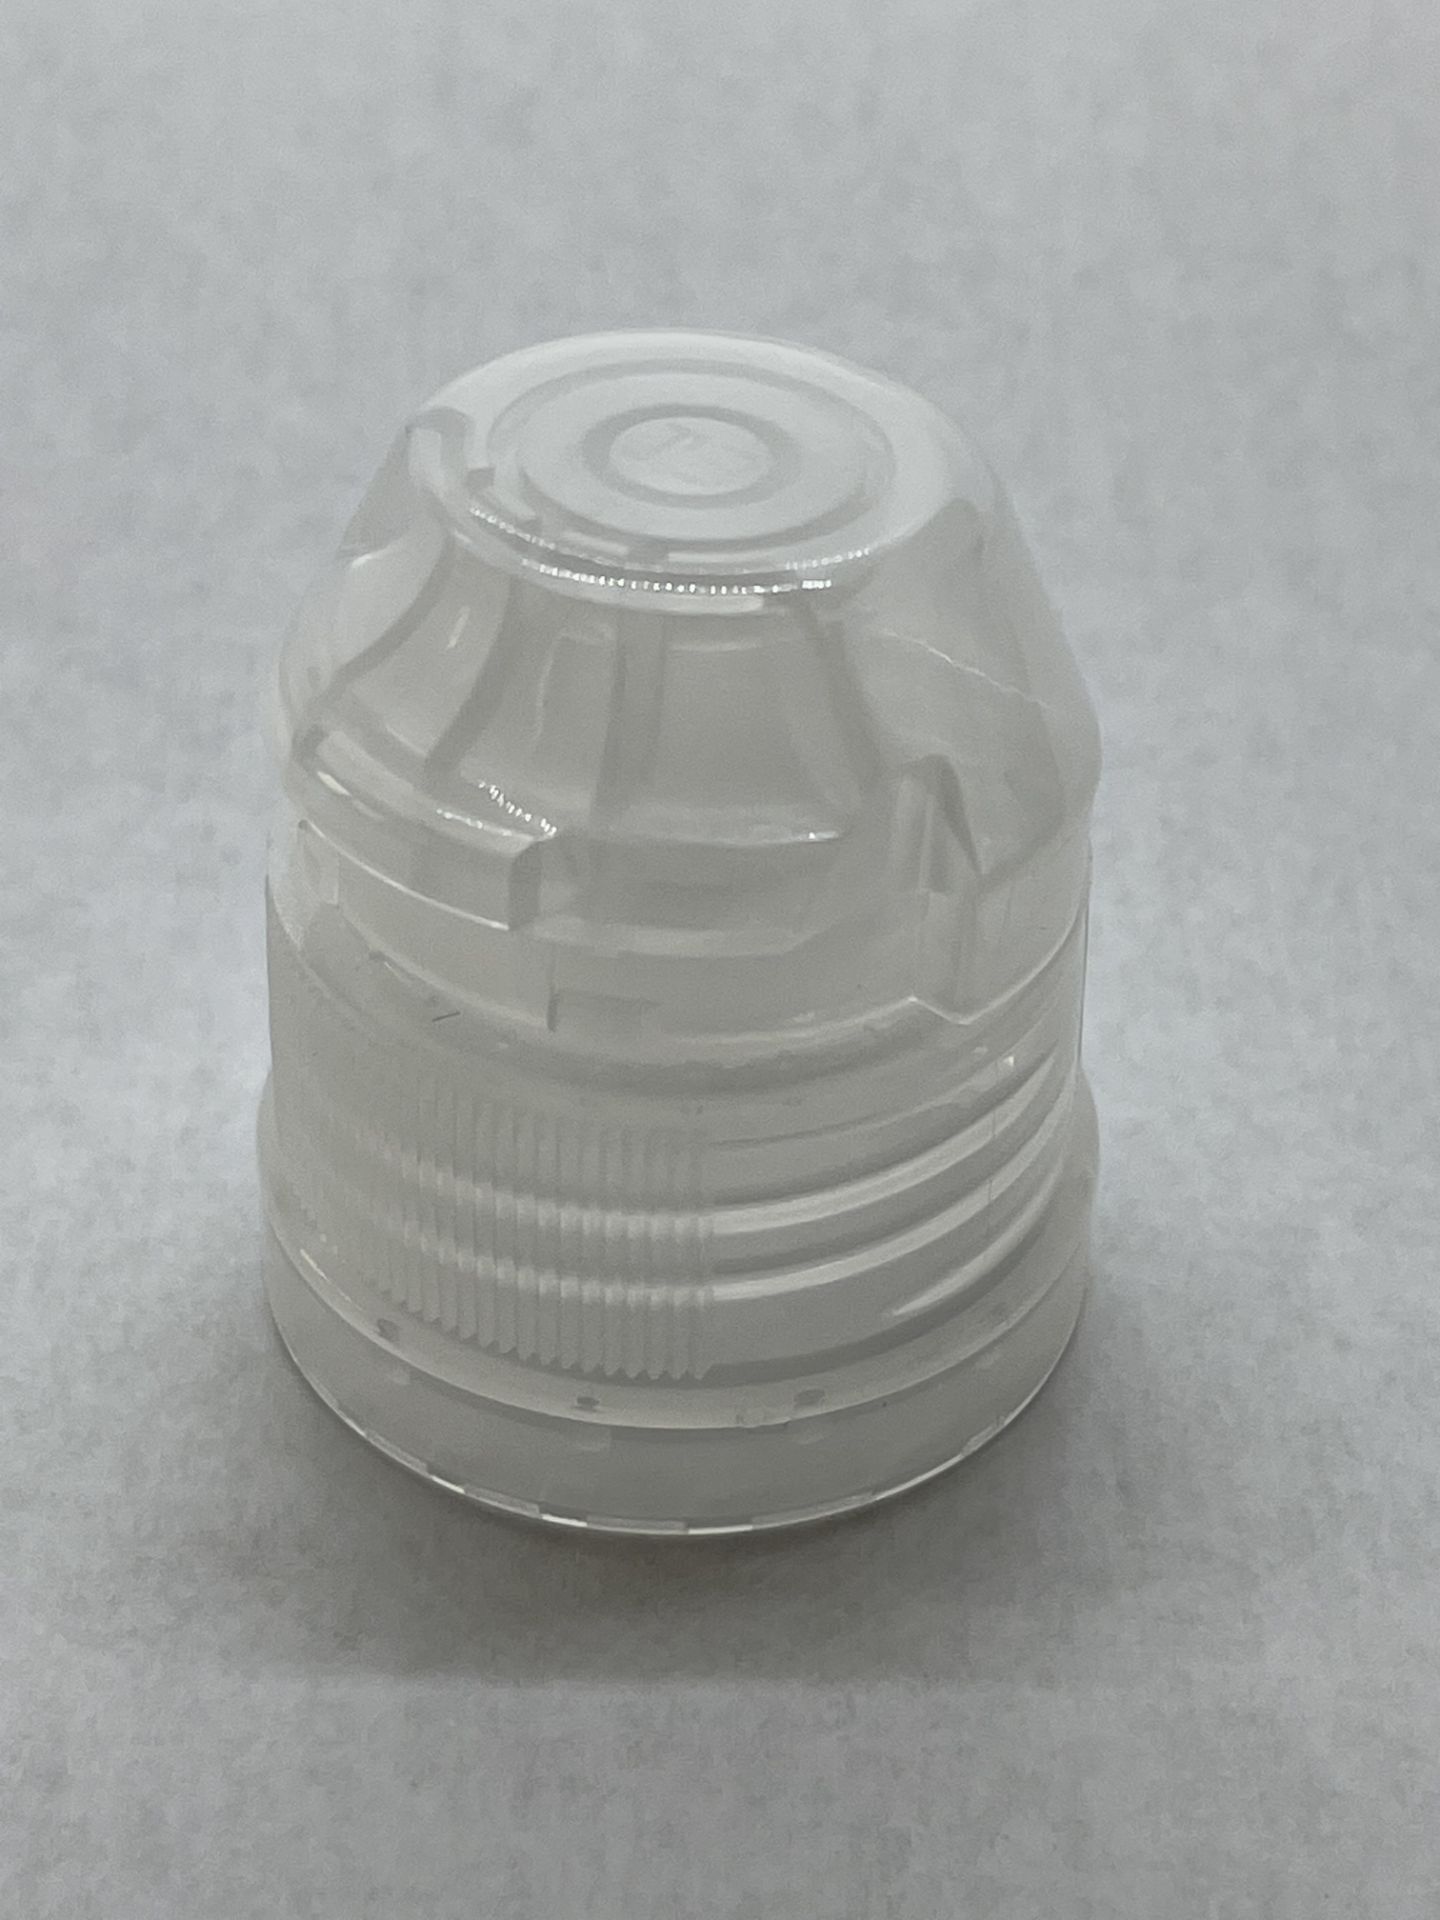 170,000 - Popular Aptar Water bottle sport cap for 16 oz bottle, 28-410 Threading - Image 2 of 3